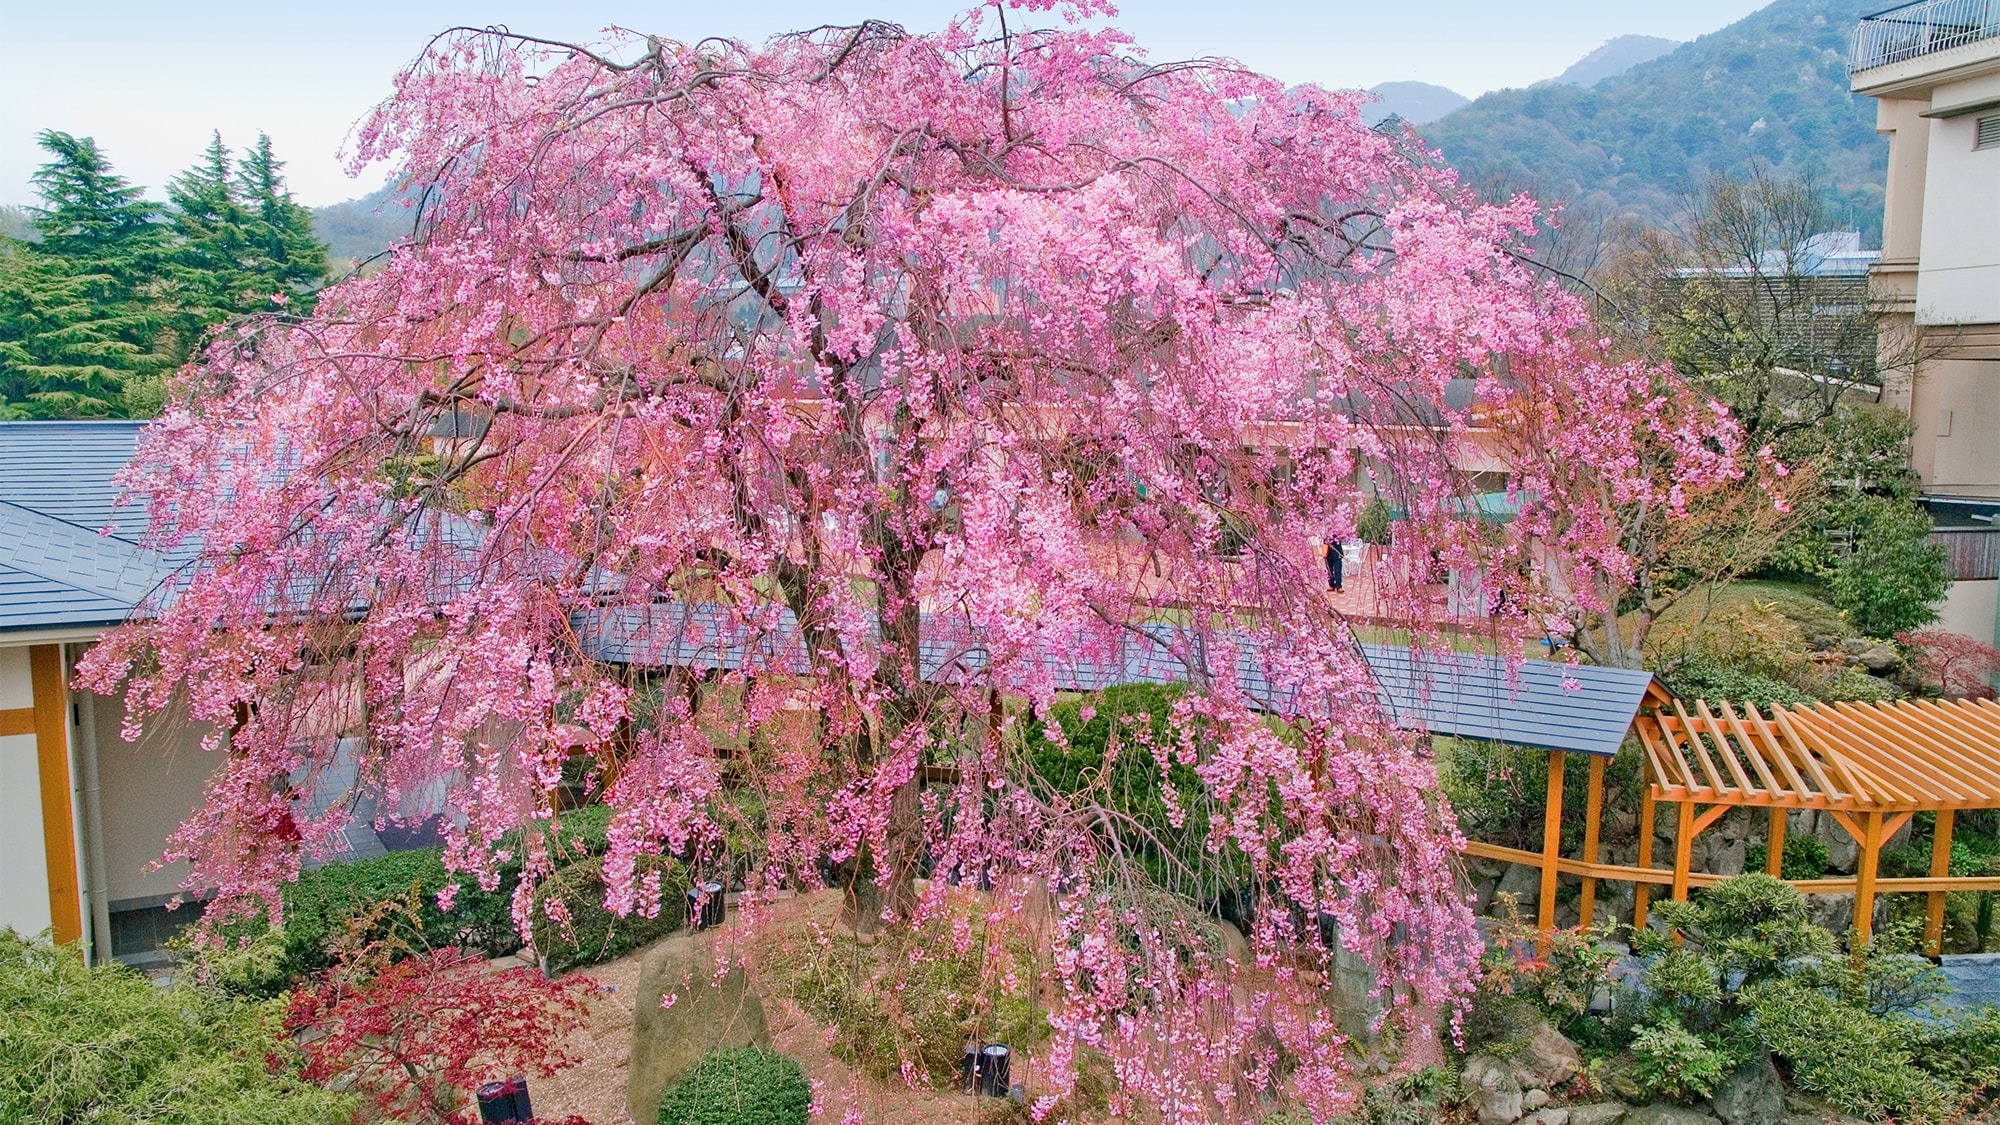 100年樹齡的雙紅垂枝櫻花